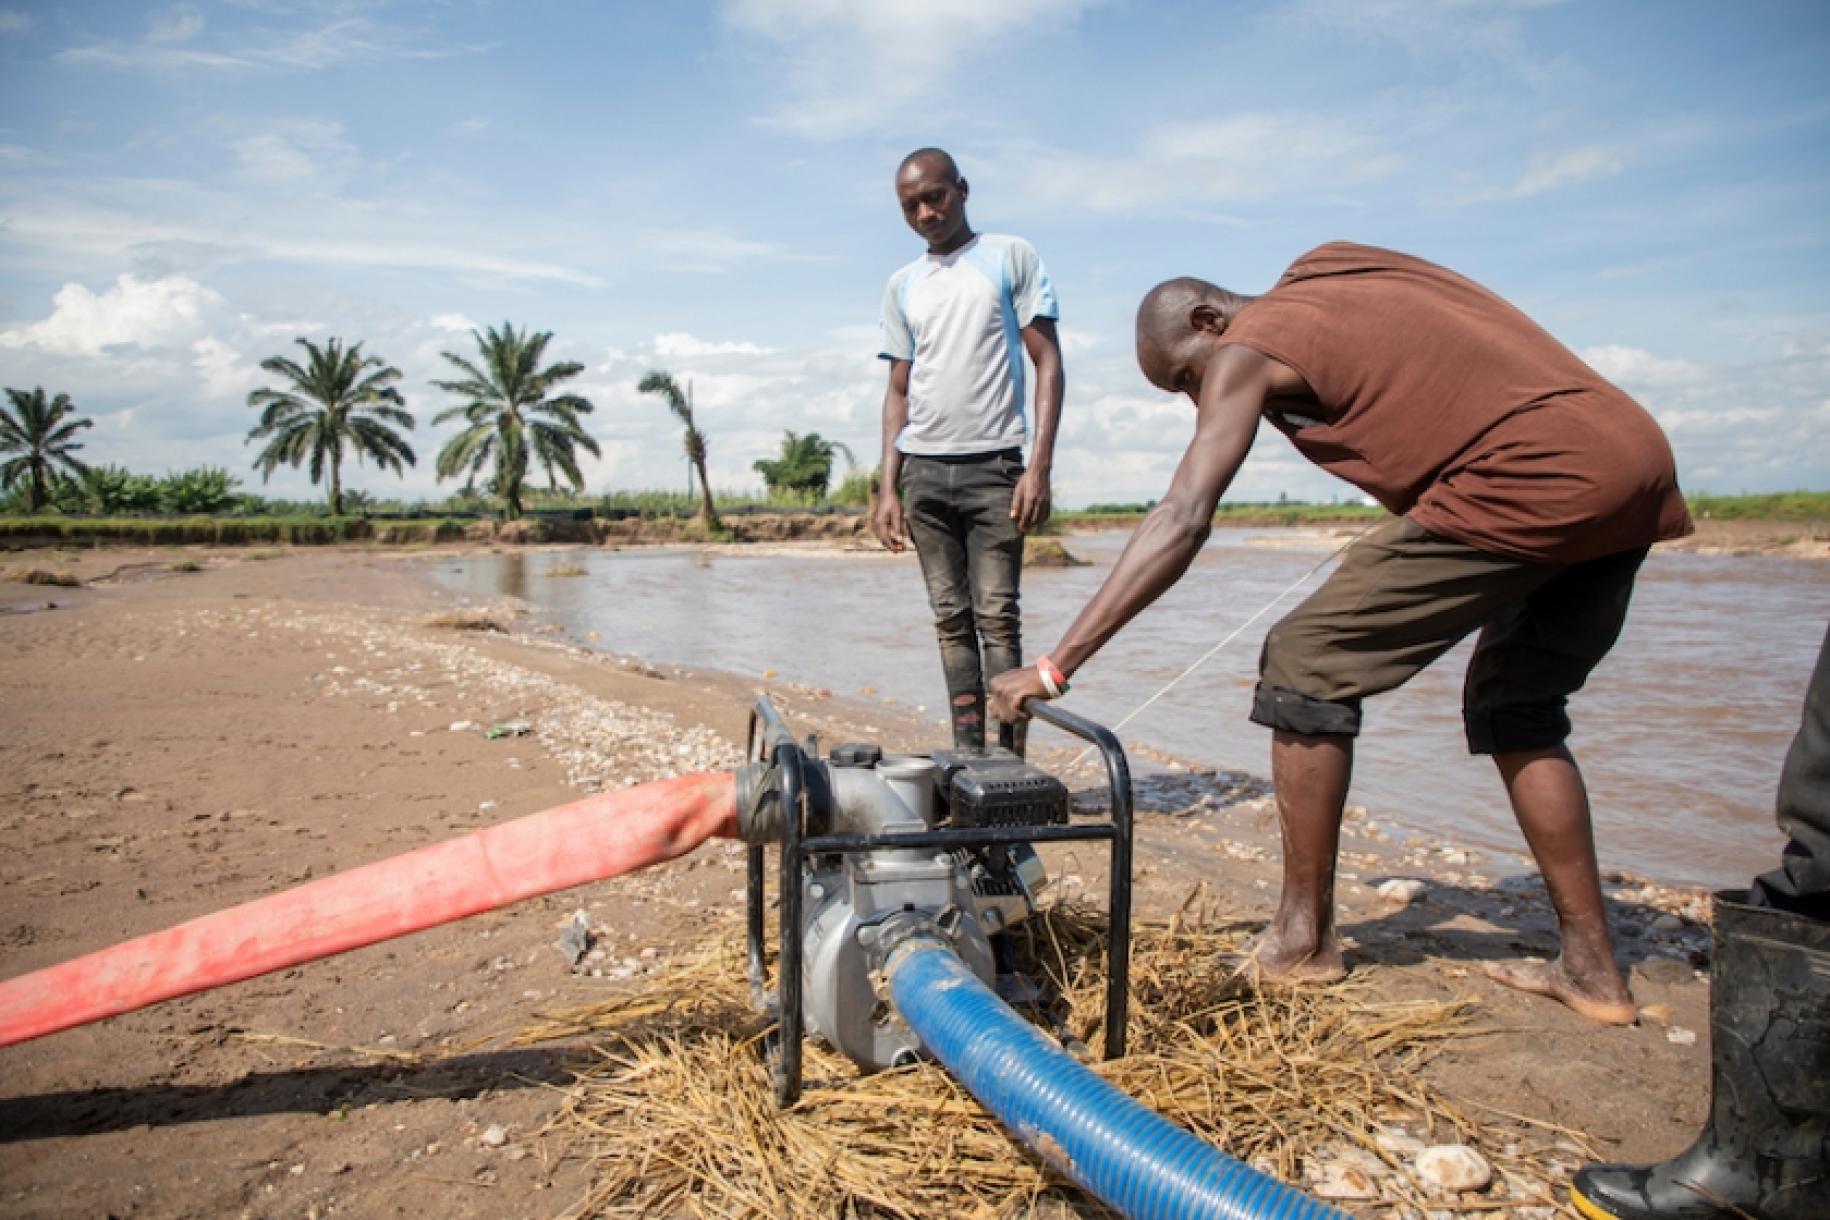 Au Burundi, au bord d'un étang bordé de palmiers, un homme se penche sur le moteur d'un système de collecte d'eau pour le faire fonctionner, sous le regard d'un autre homme.